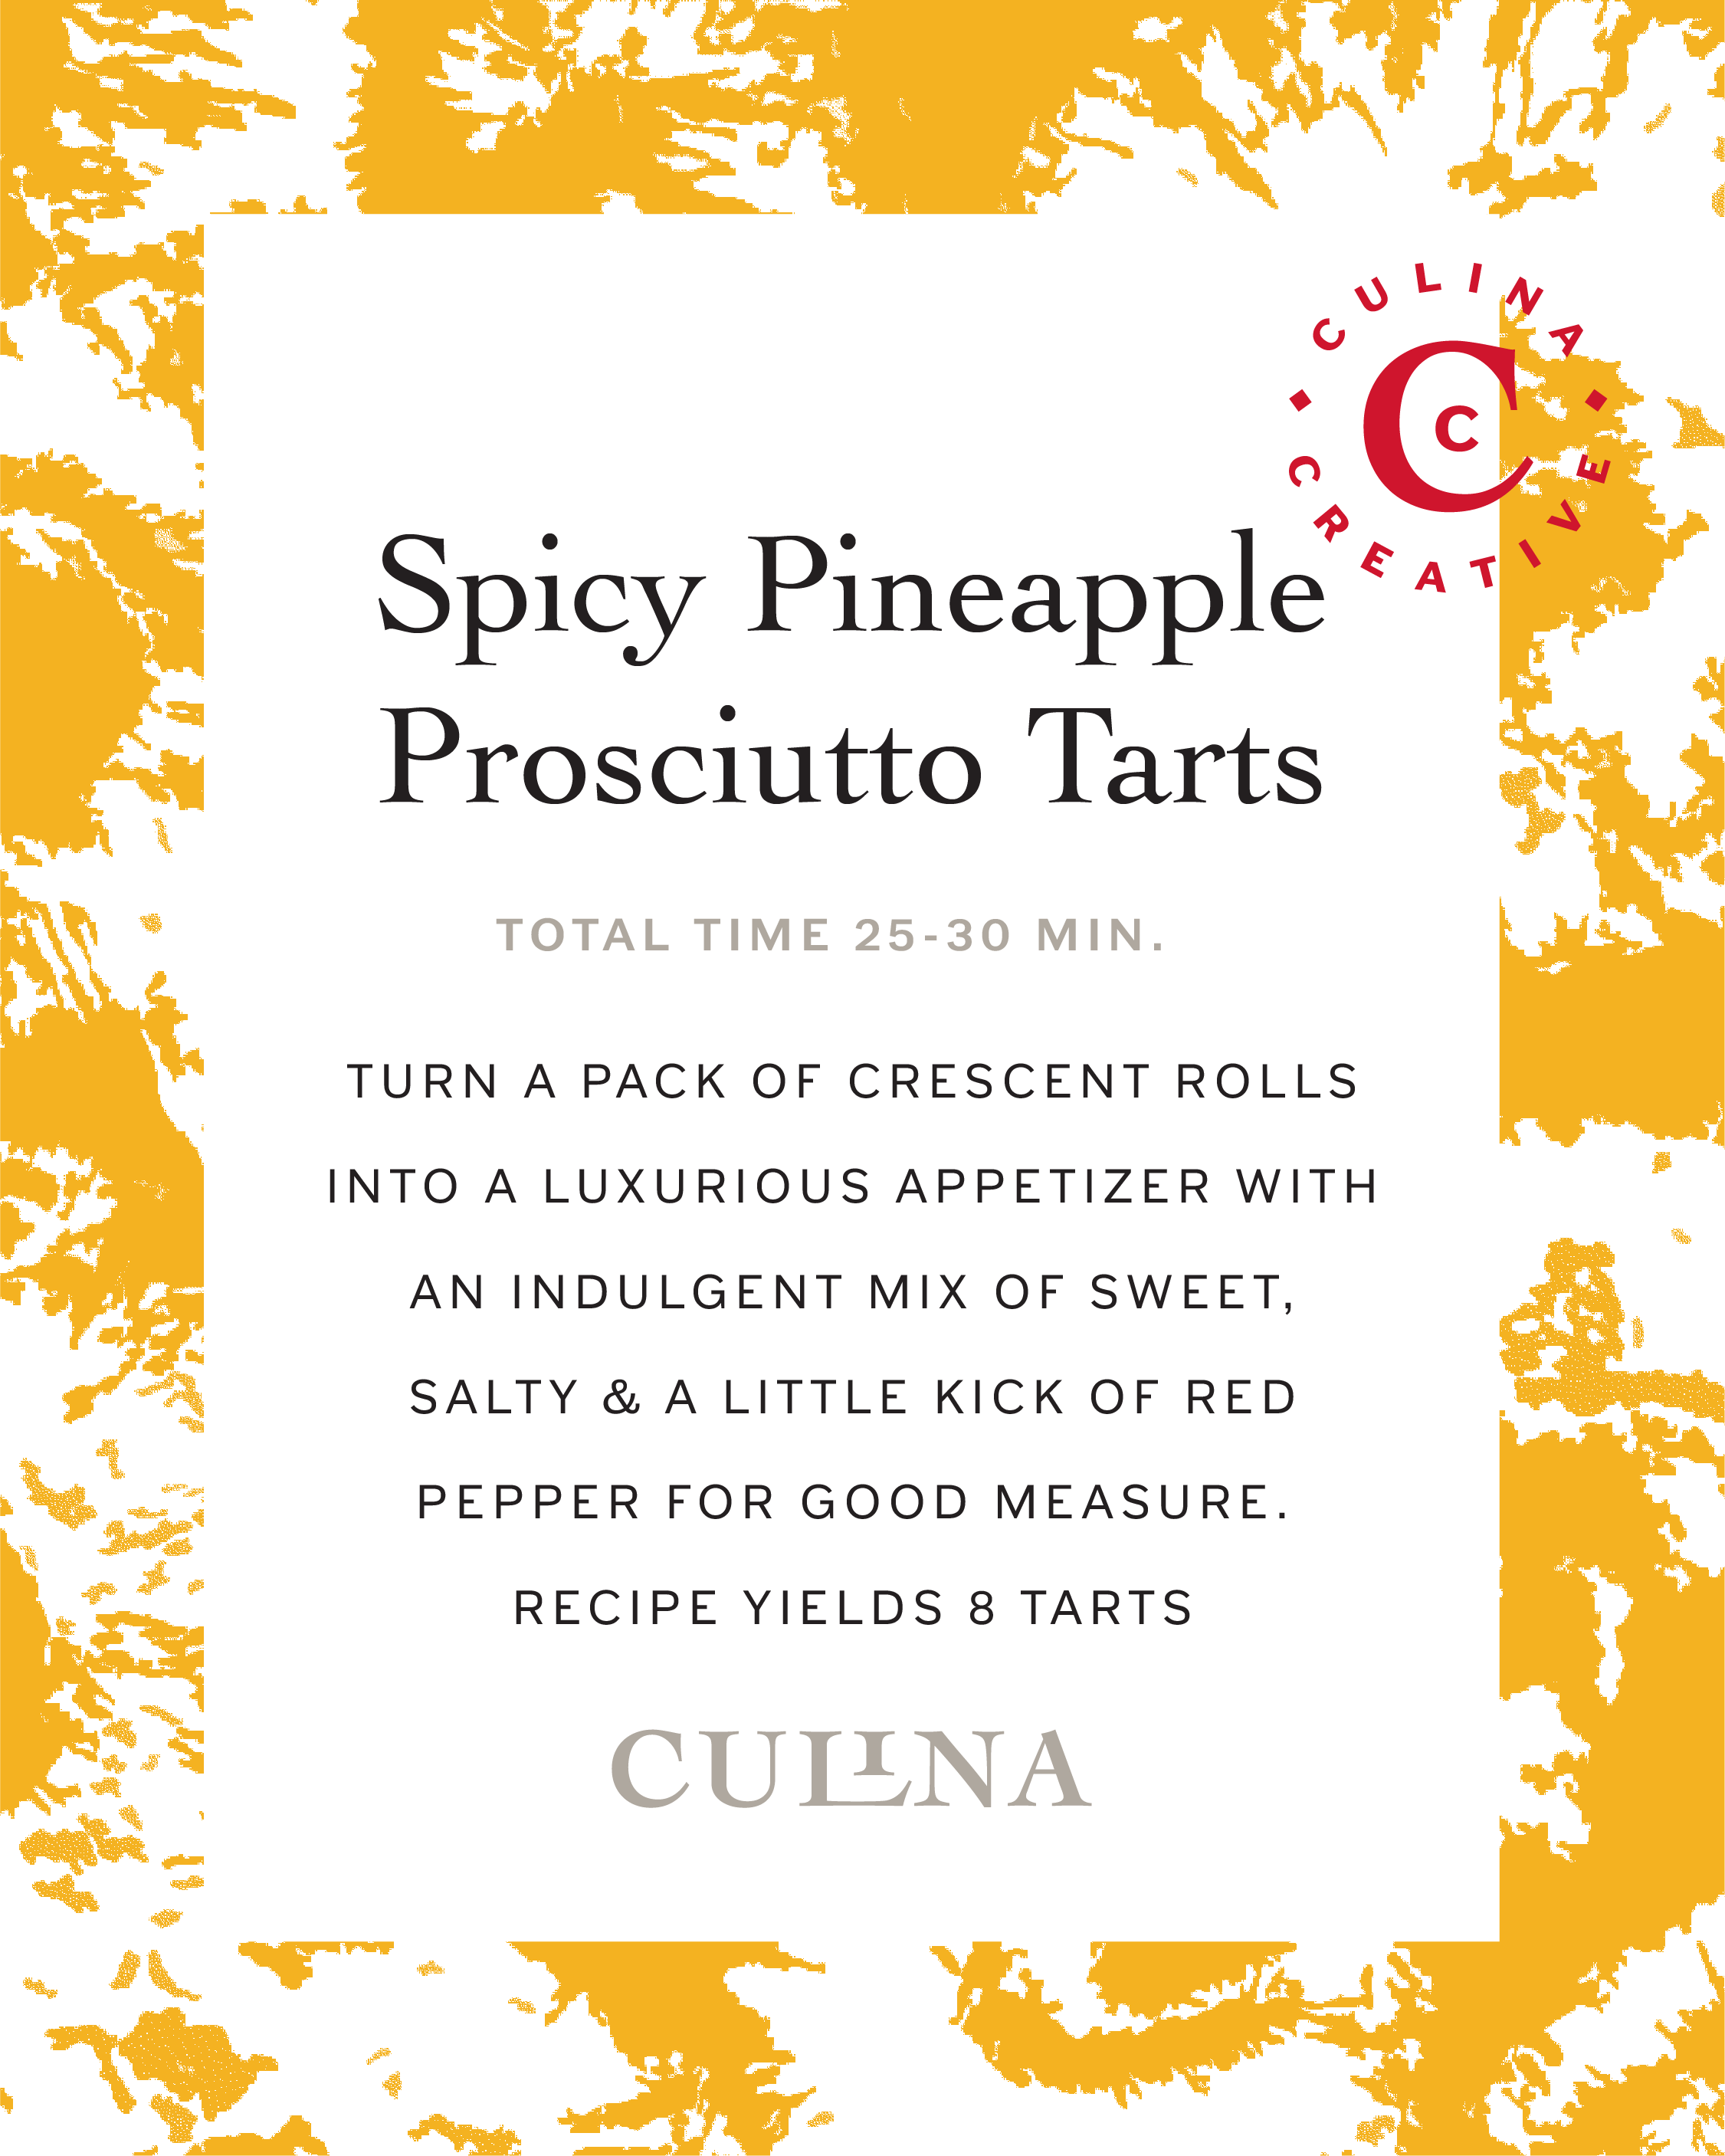 Spicy Pineapple Prosciutto Tarts Recipe Card